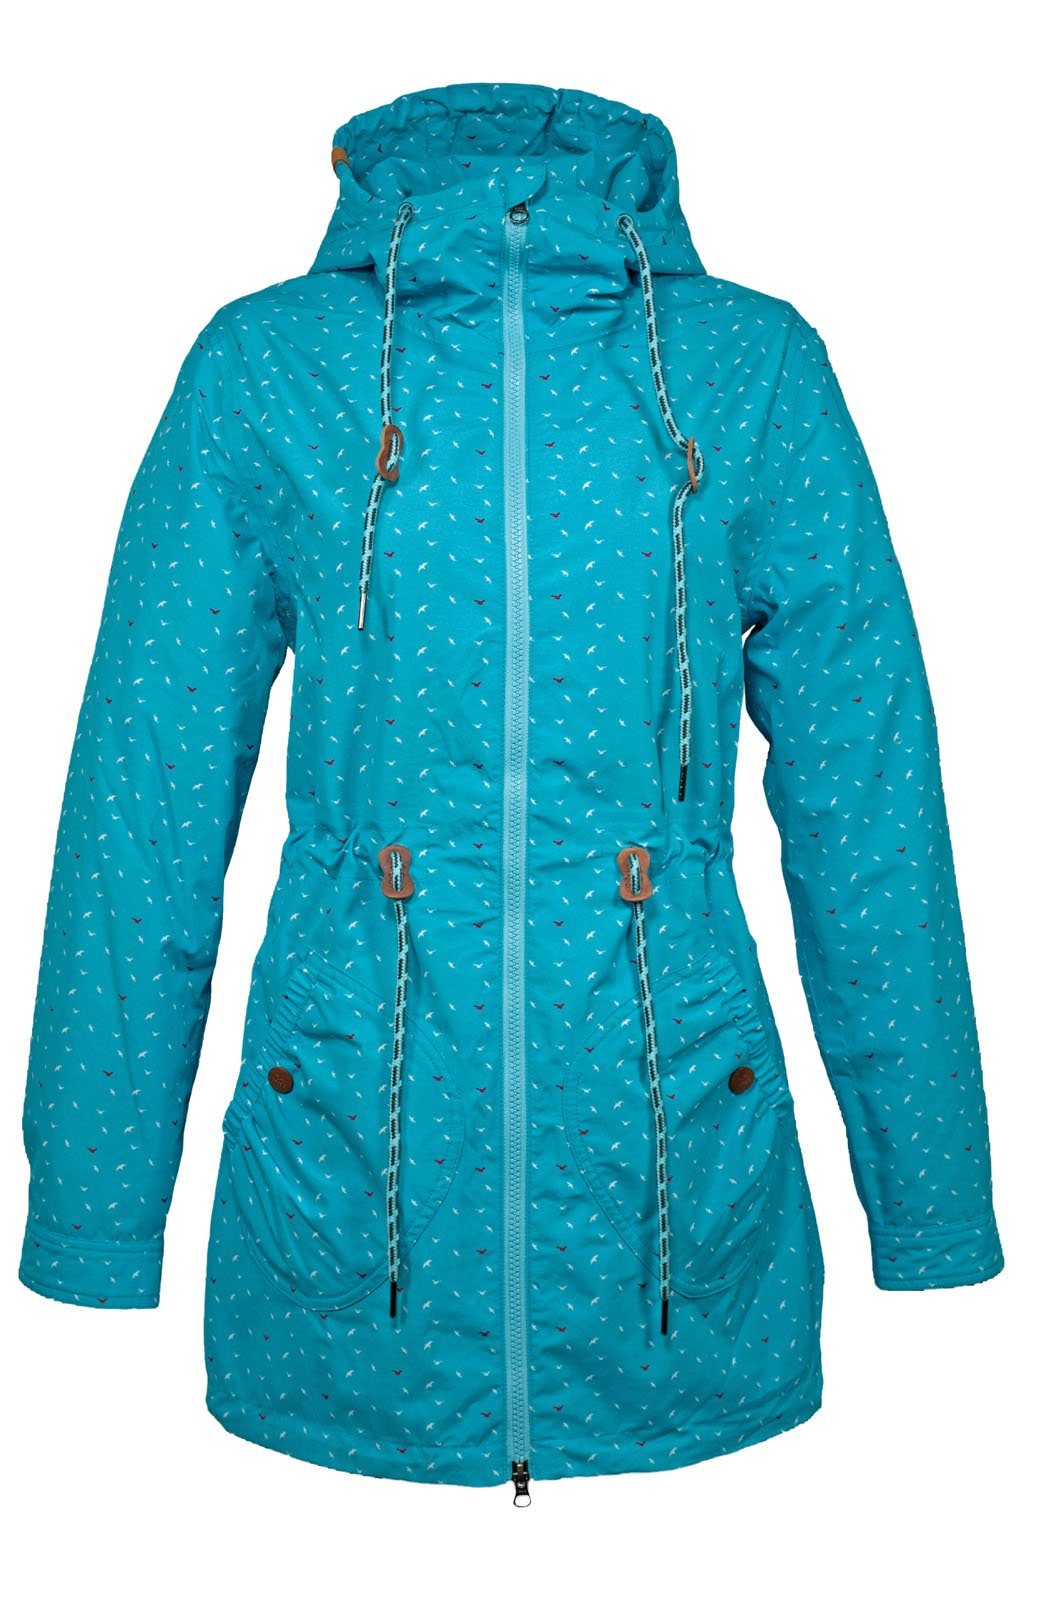 Brigg Regenjacke Damen Wetterjacke Lizzy mit Möwen-Print - Maritime Outdoor- Jacke mit Kapuze online kaufen | OTTO